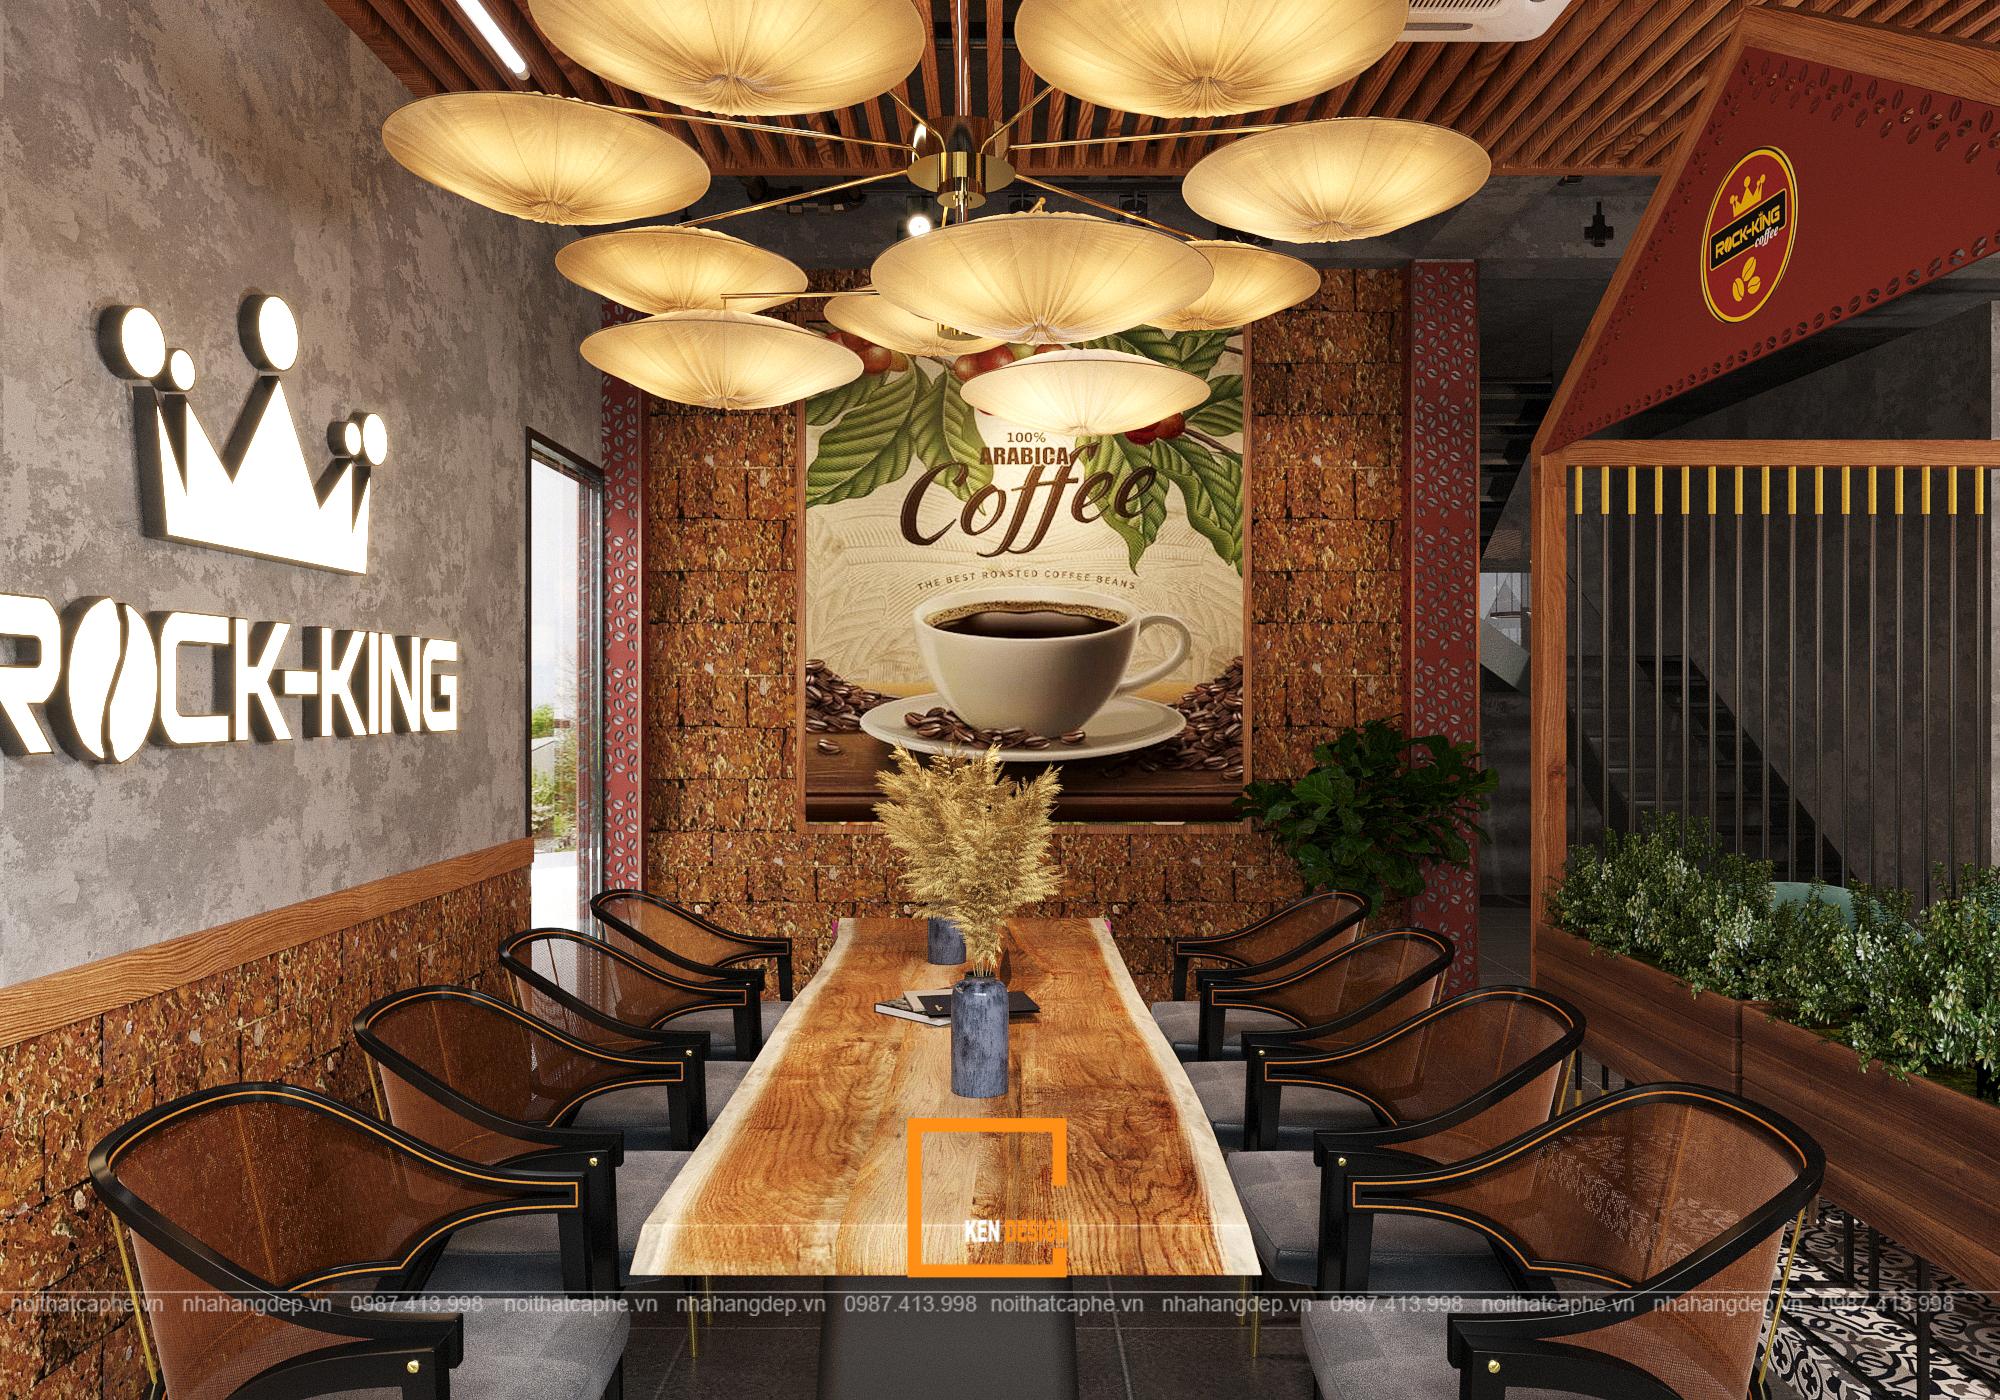 Quán cafe Rock King Coffee Quảng Ninh